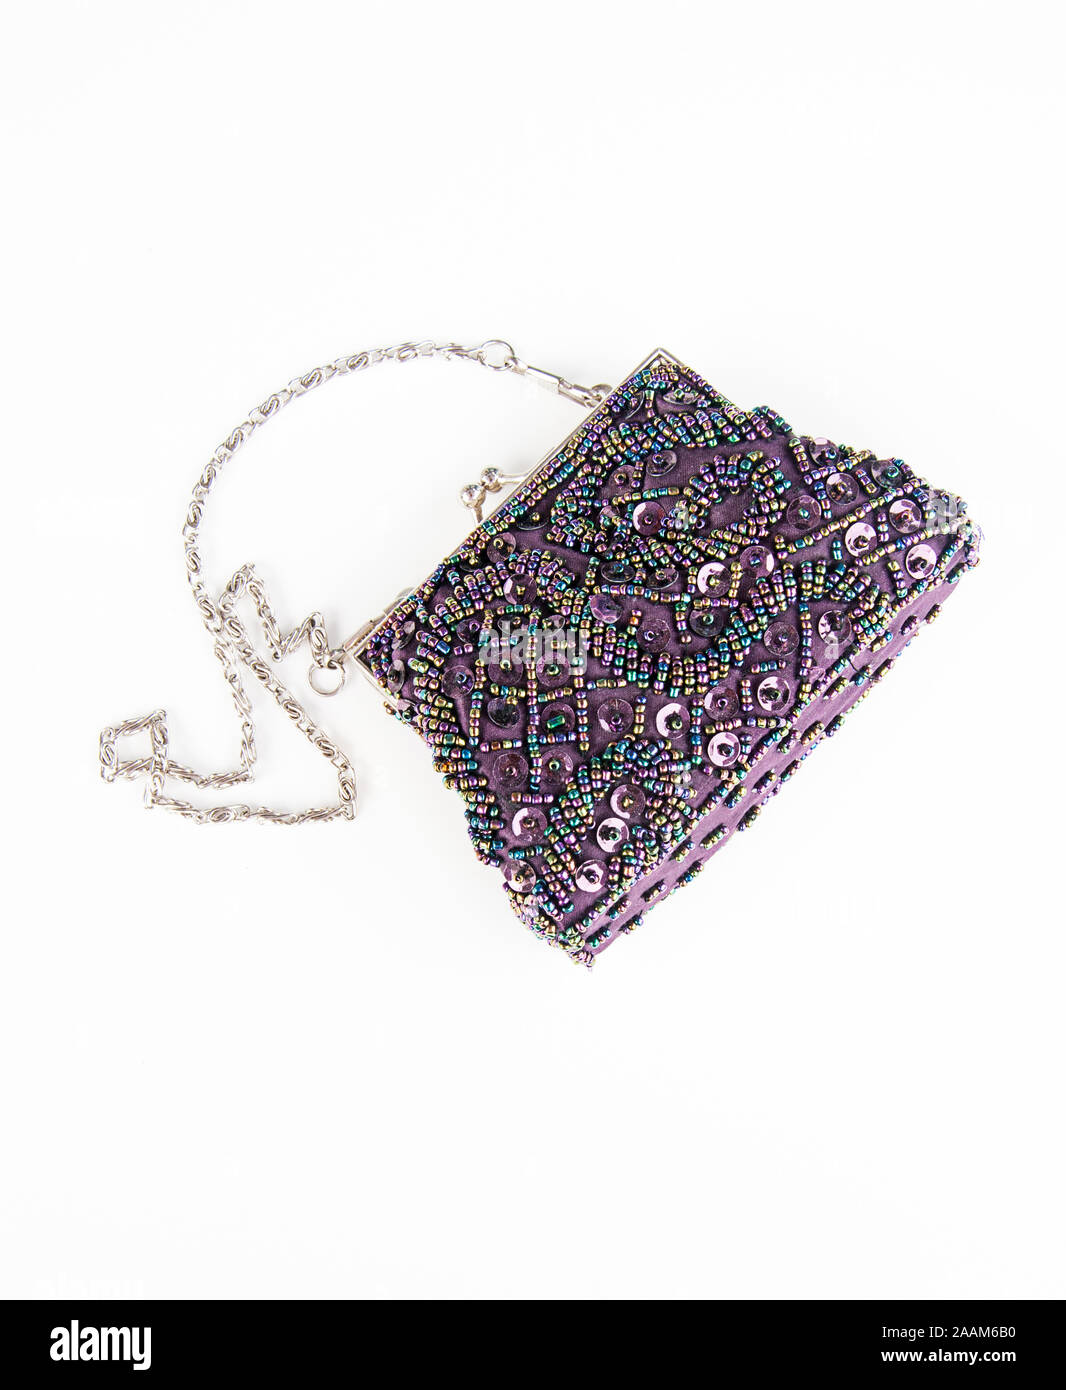 Lila Perlen Kupplung Handtasche Mode auf hellen Hintergrund isoliert. Silber Kette Armband mit irisierenden Pailletten und Details. Frauen Modeaccessoire. Stockfoto